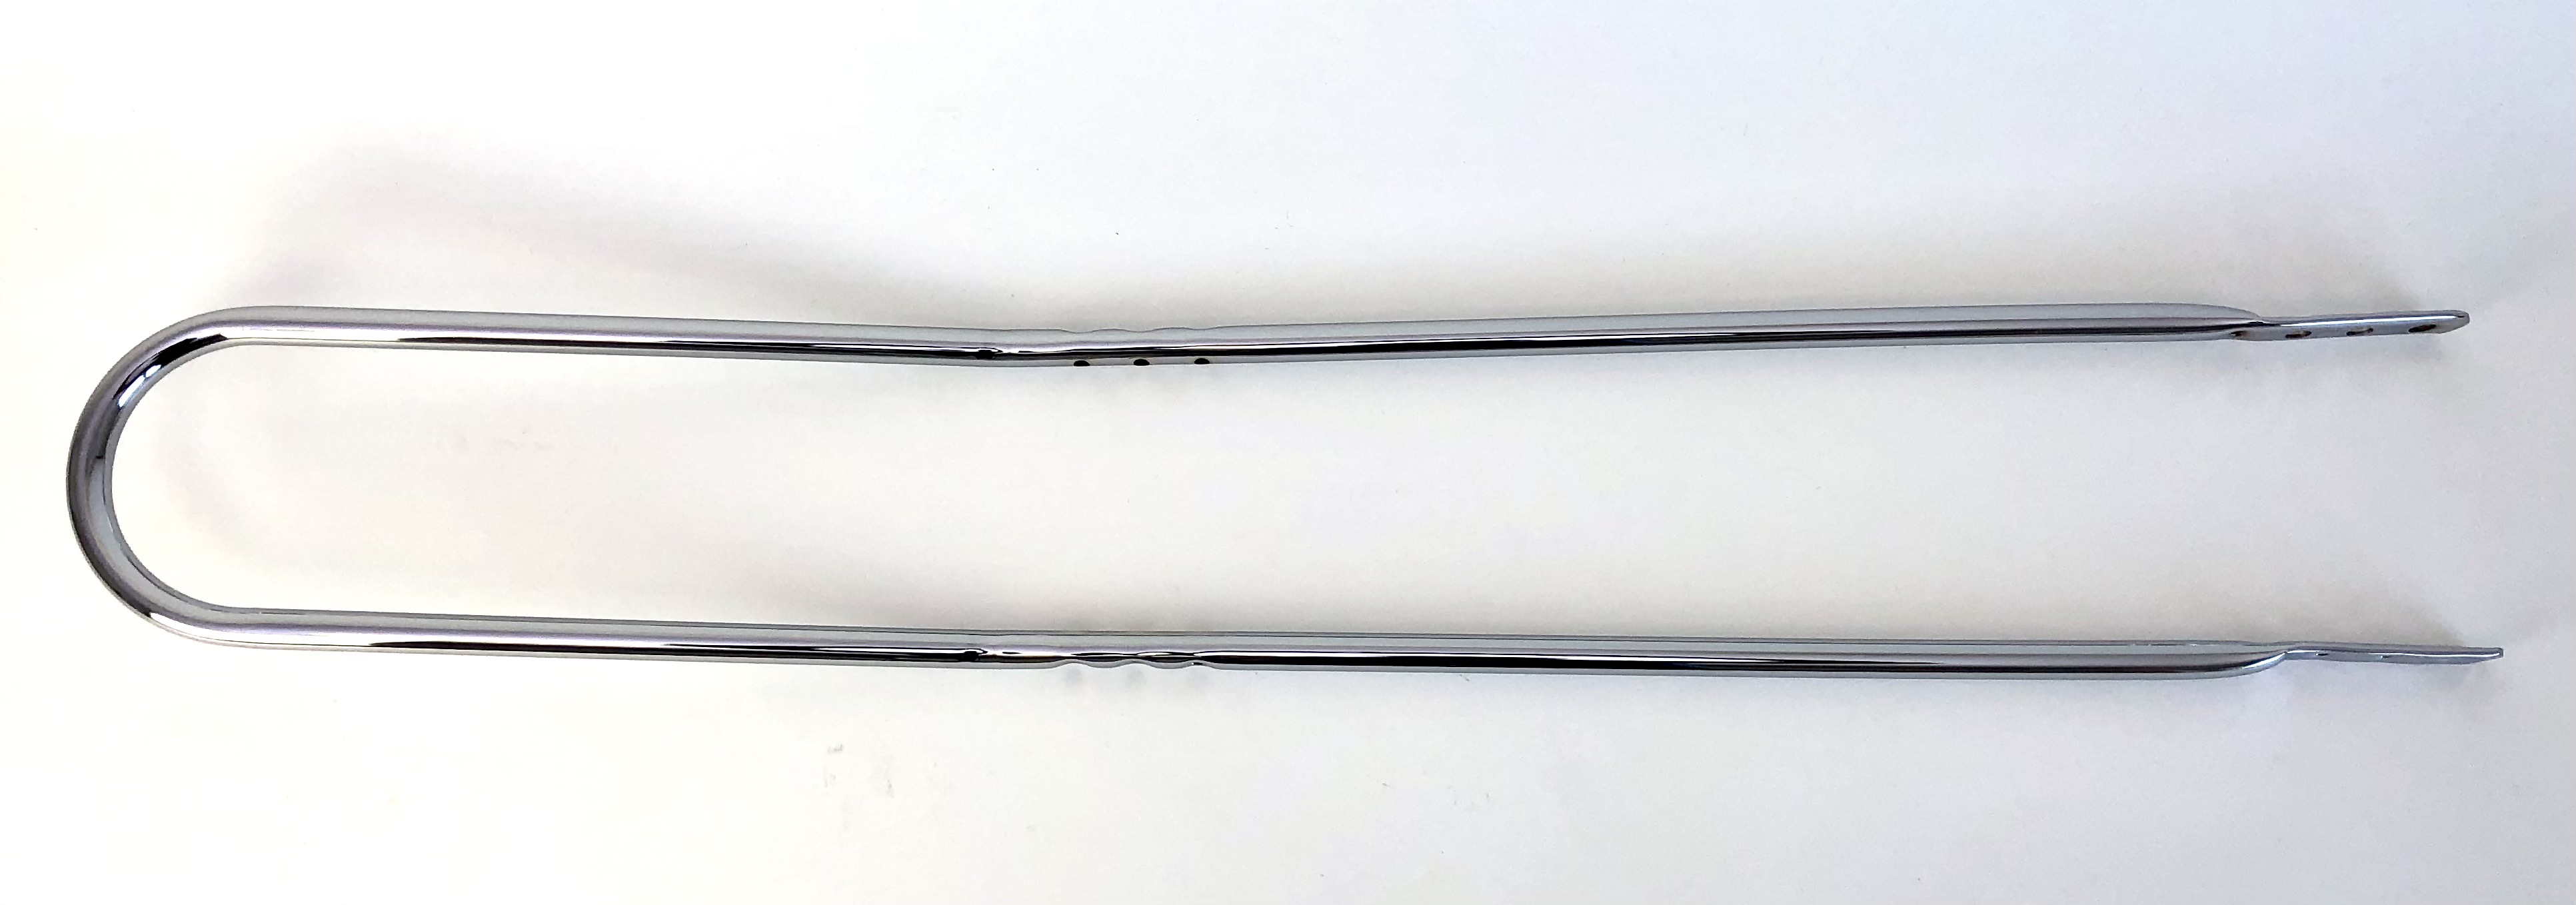 Sissybar 95 cm lang verchromt